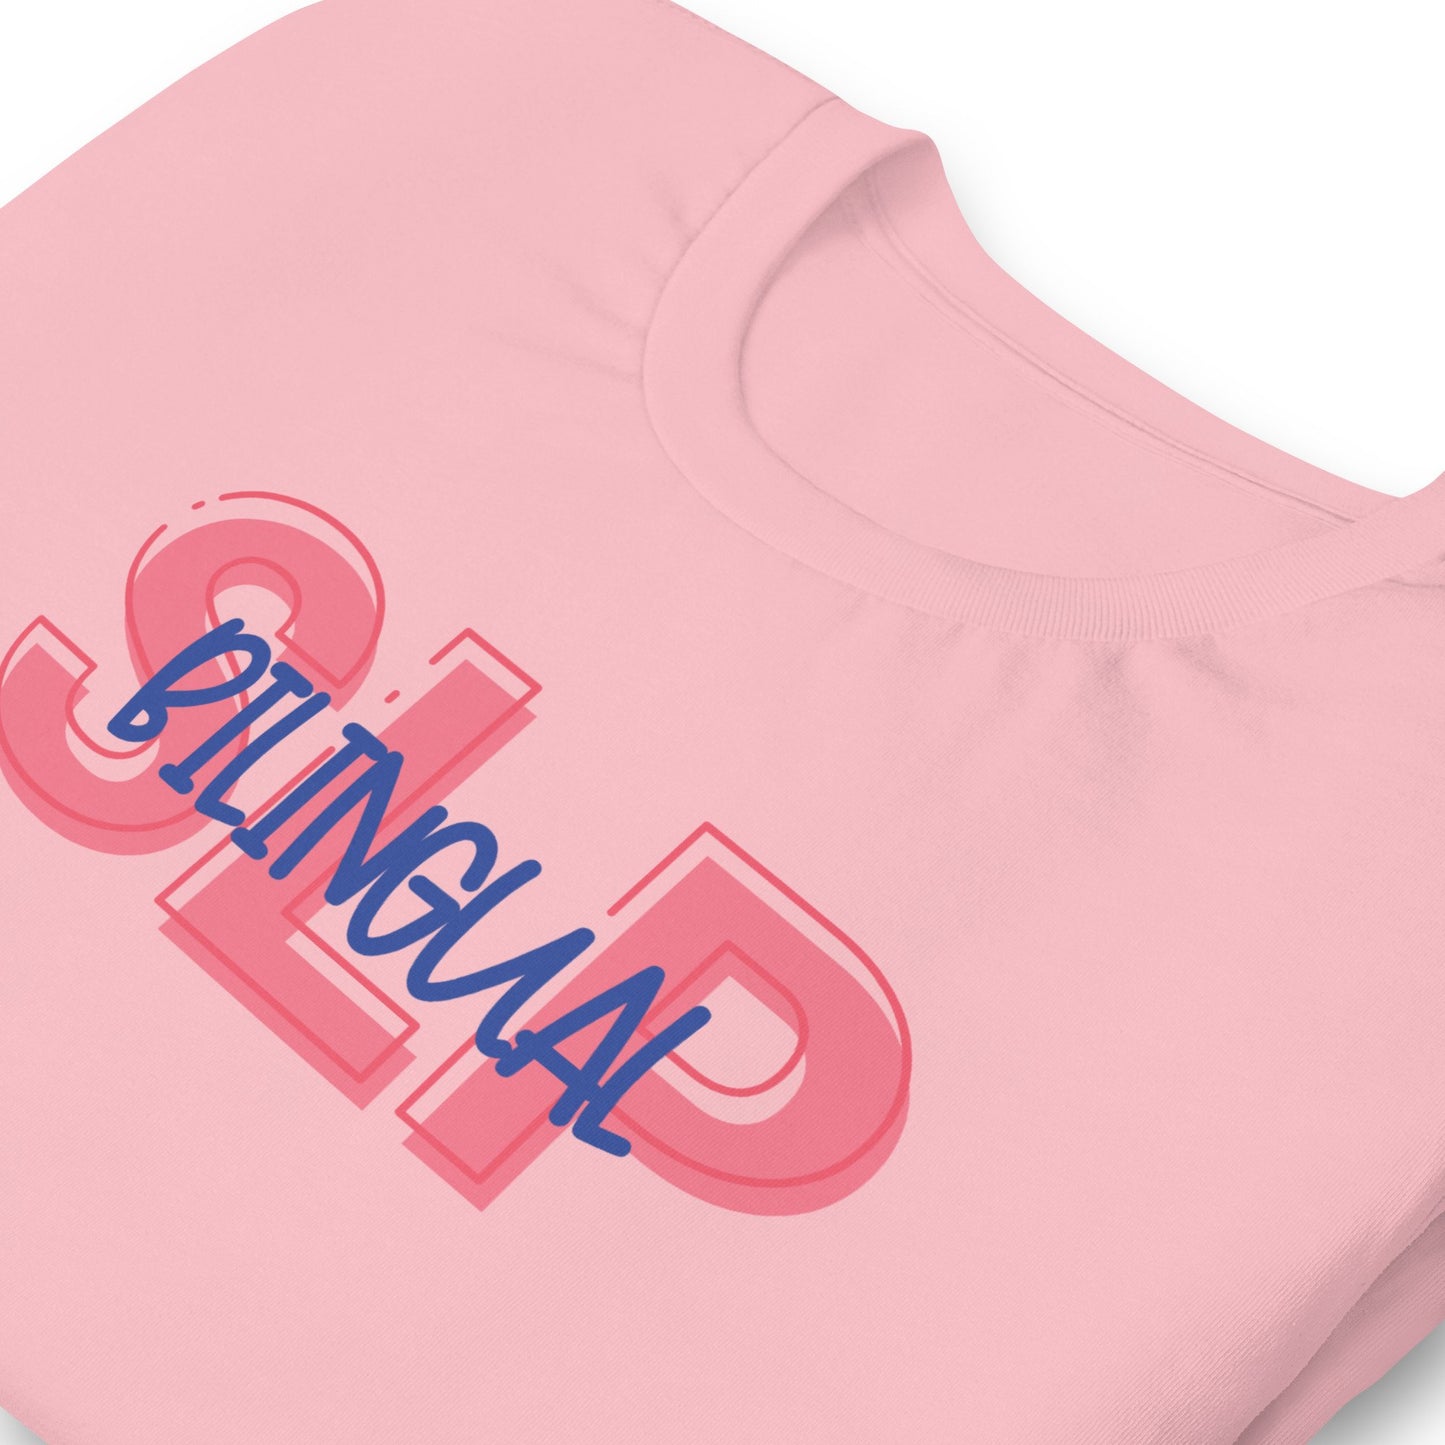 unisex-staple-t-shirt-pink-zoomed-in-62f17cf8c4681.jpg